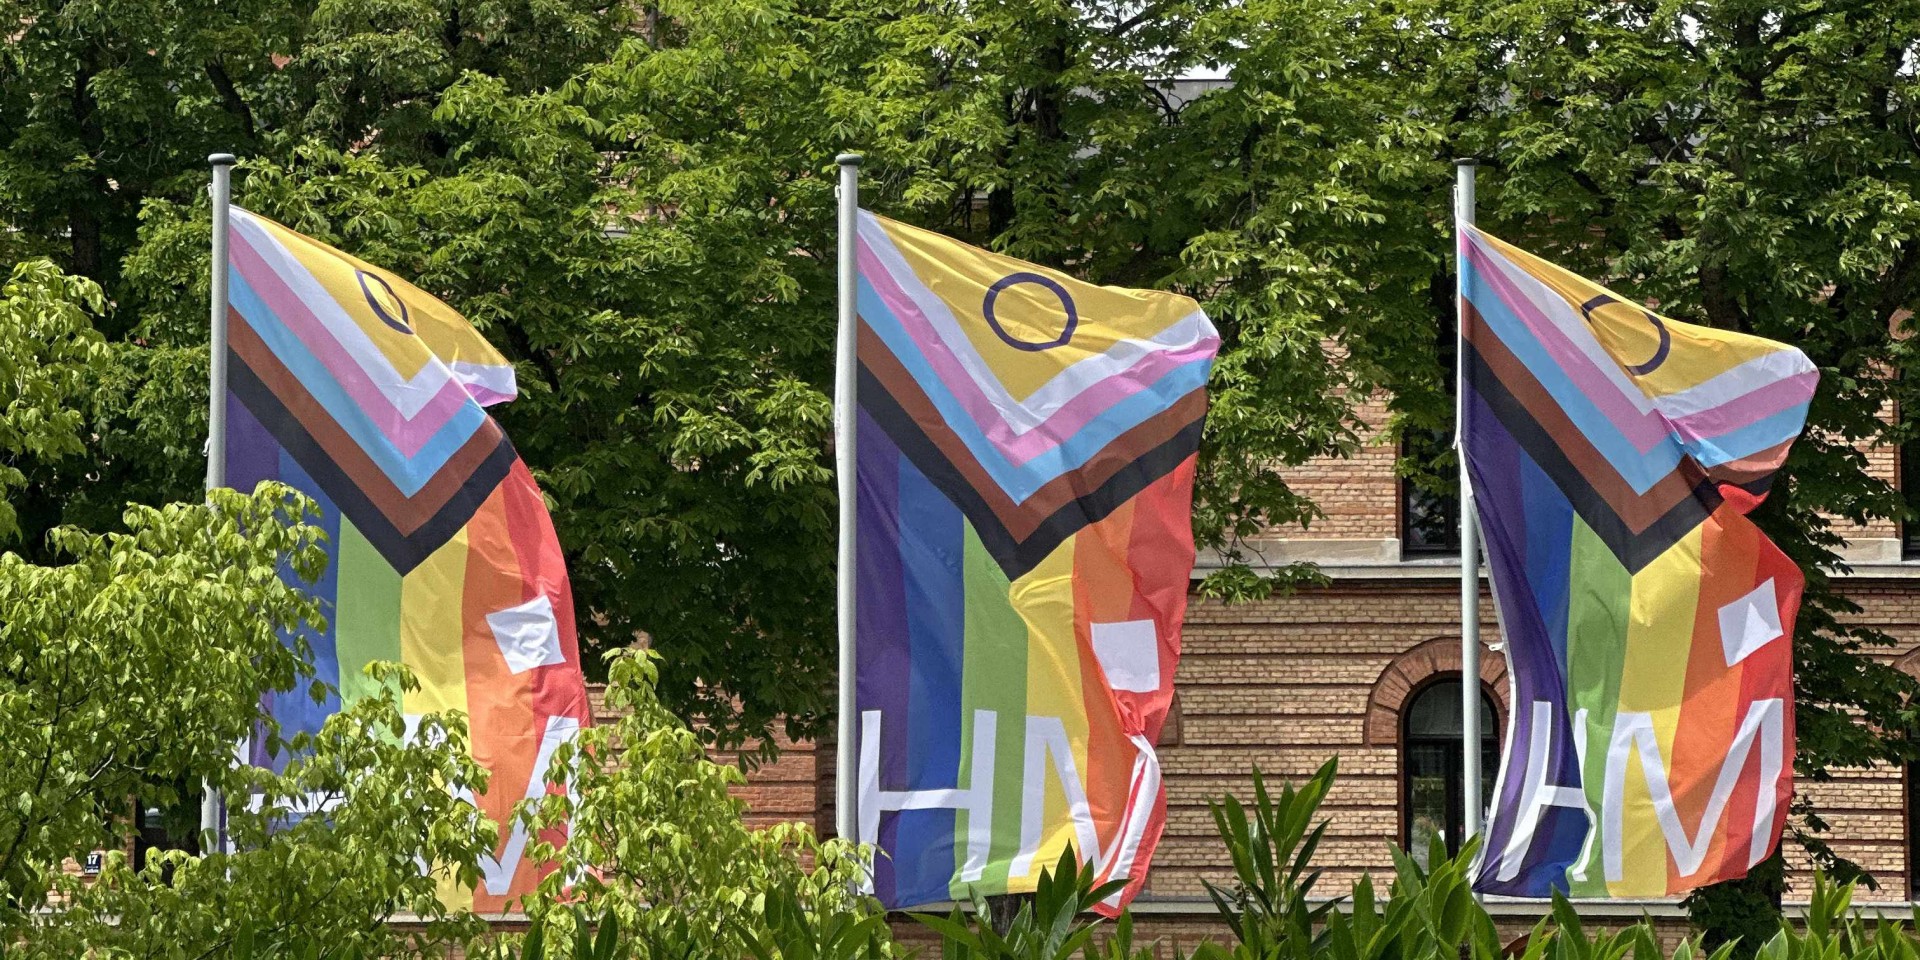 Prideflaggen vor der Hochschule München